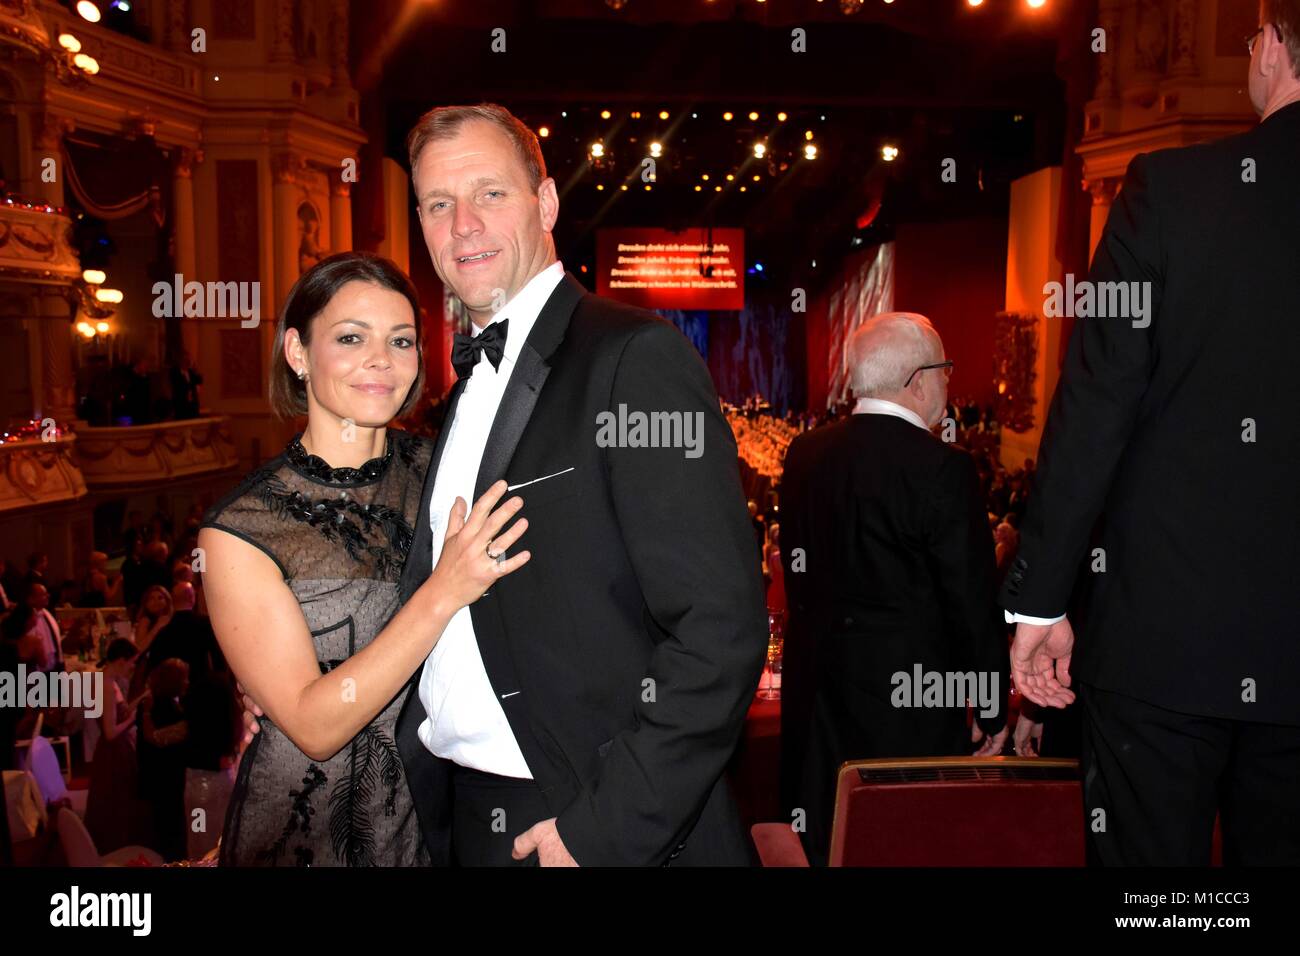 Simon Zaglmann - General Manager - Kempinski Hotel Moika 22 mit Ehefrau Stock Photo